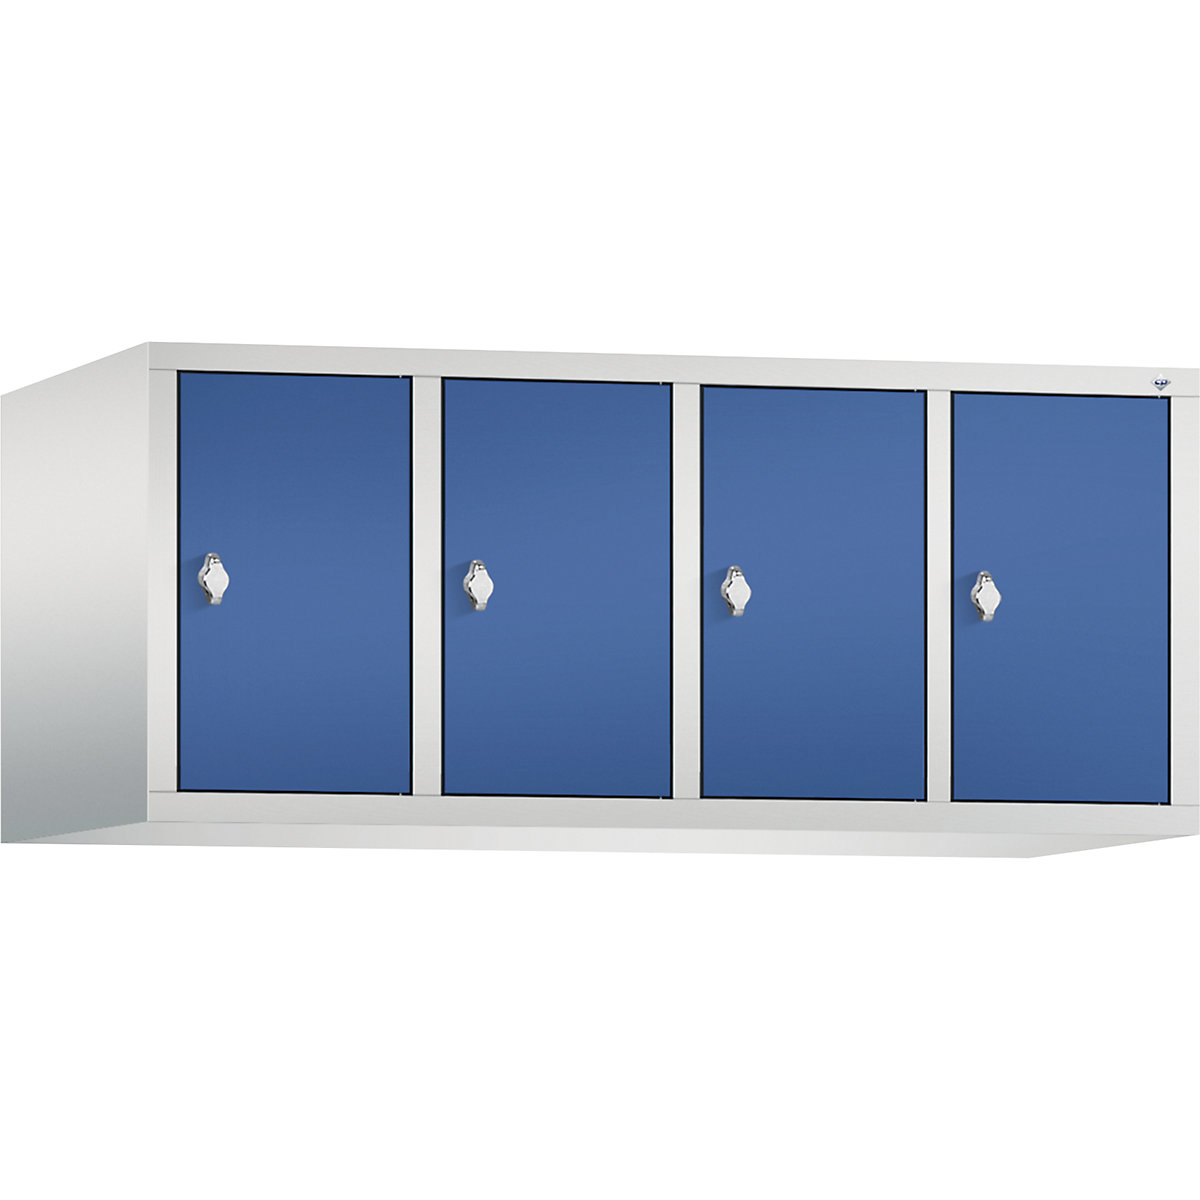 C+P – Altillo CLASSIC, 4 compartimentos, anchura de compartimento 300 mm, gris luminoso / azul genciana